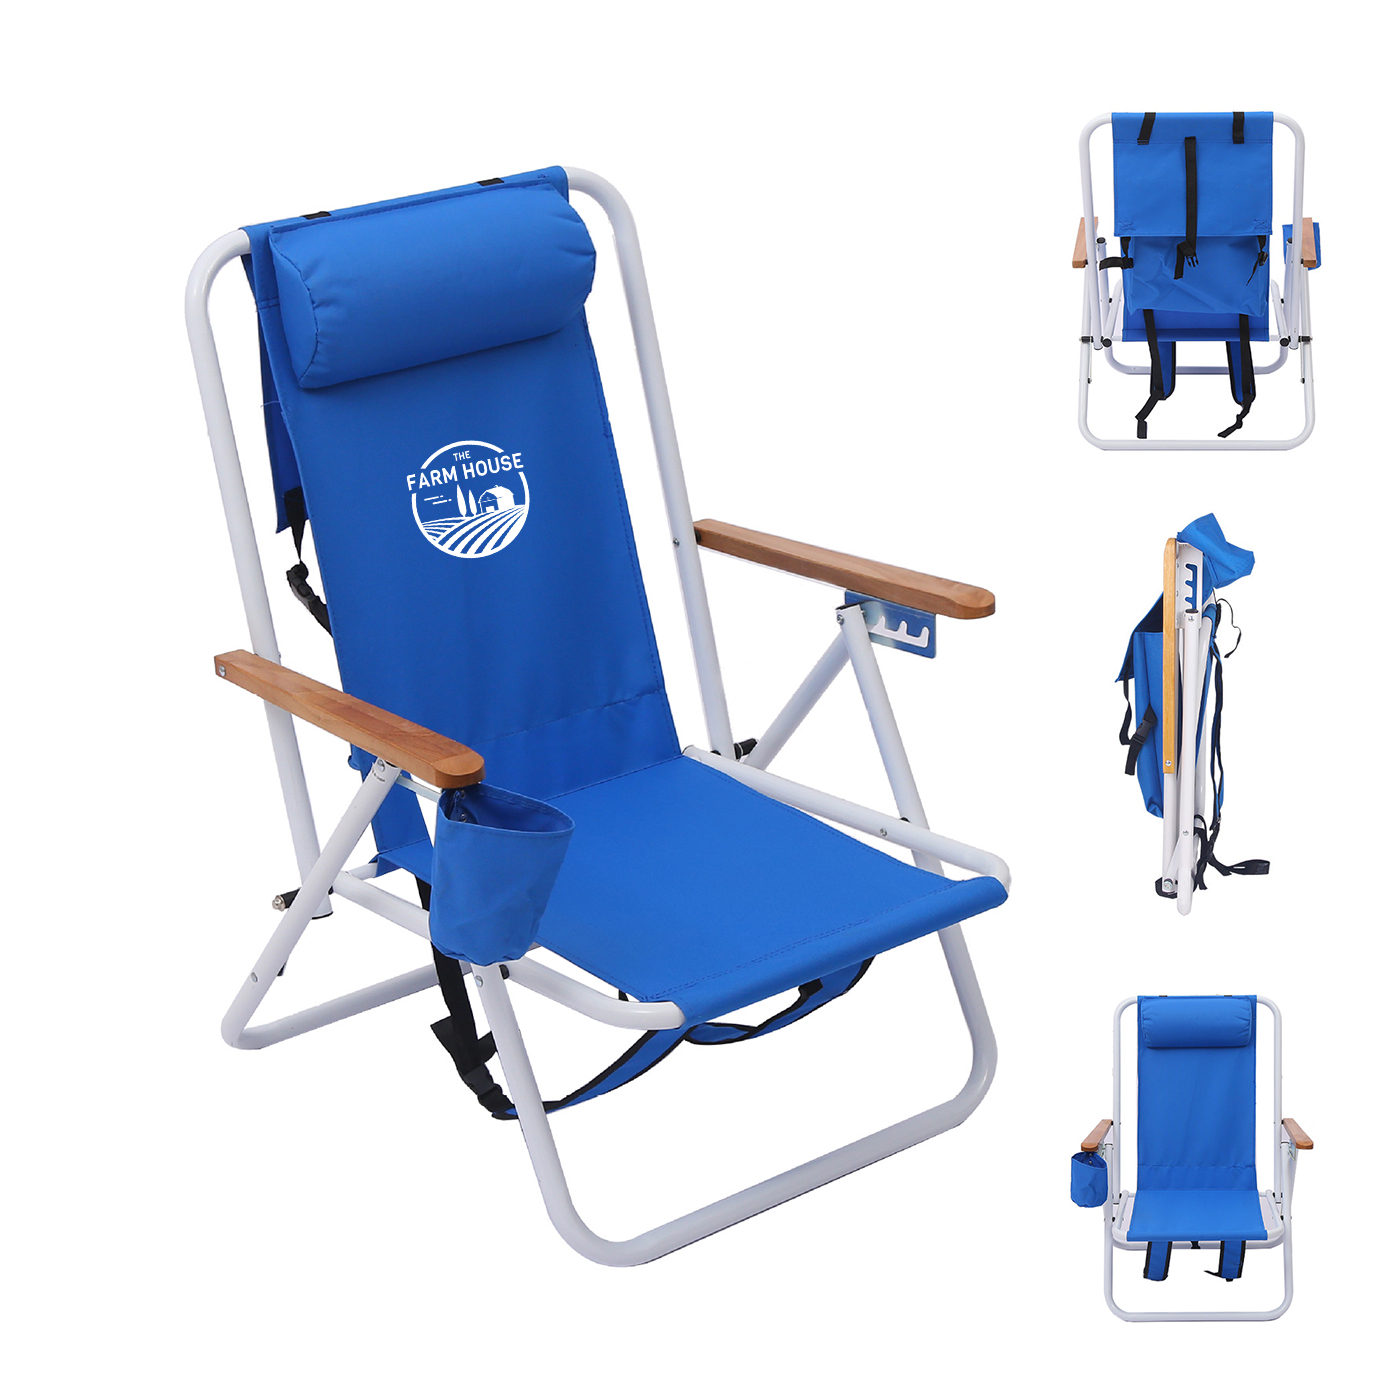 Portable Backpack Beach Chair4